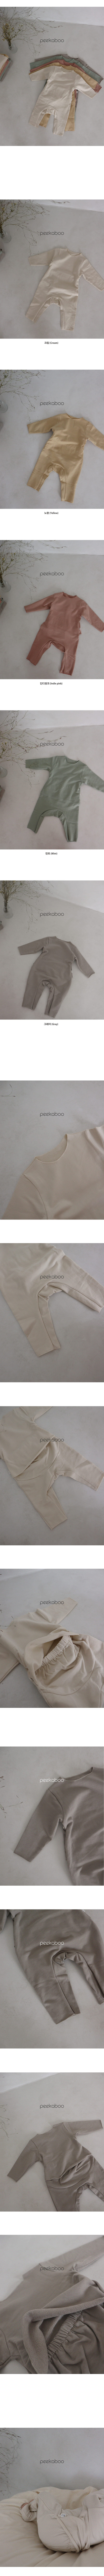 Peekaboo - Korean Baby Fashion - #babyclothing - Morning Bodysuit - 3